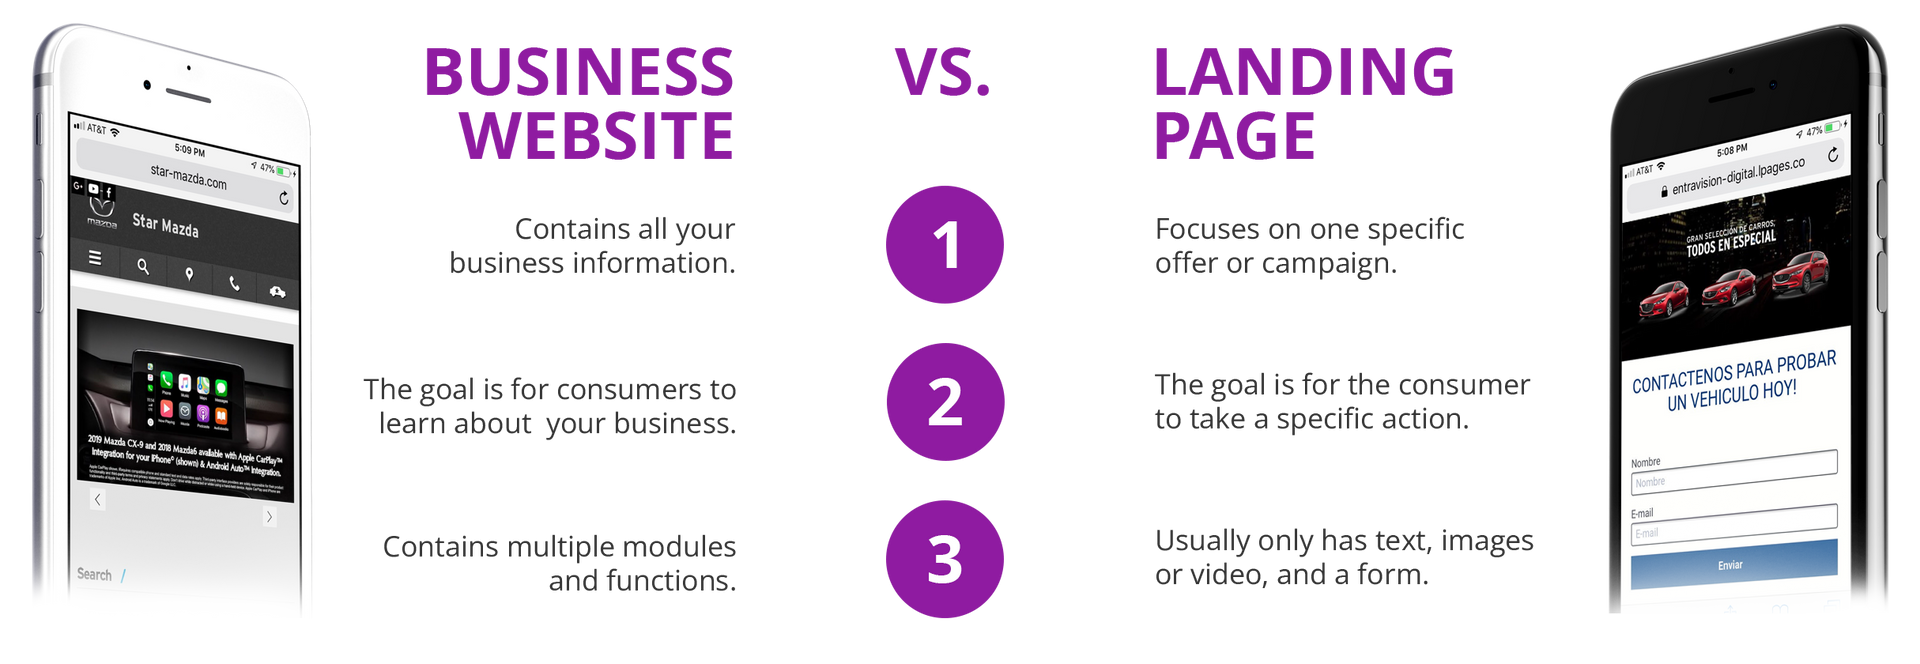 Business website vs landing page comparison